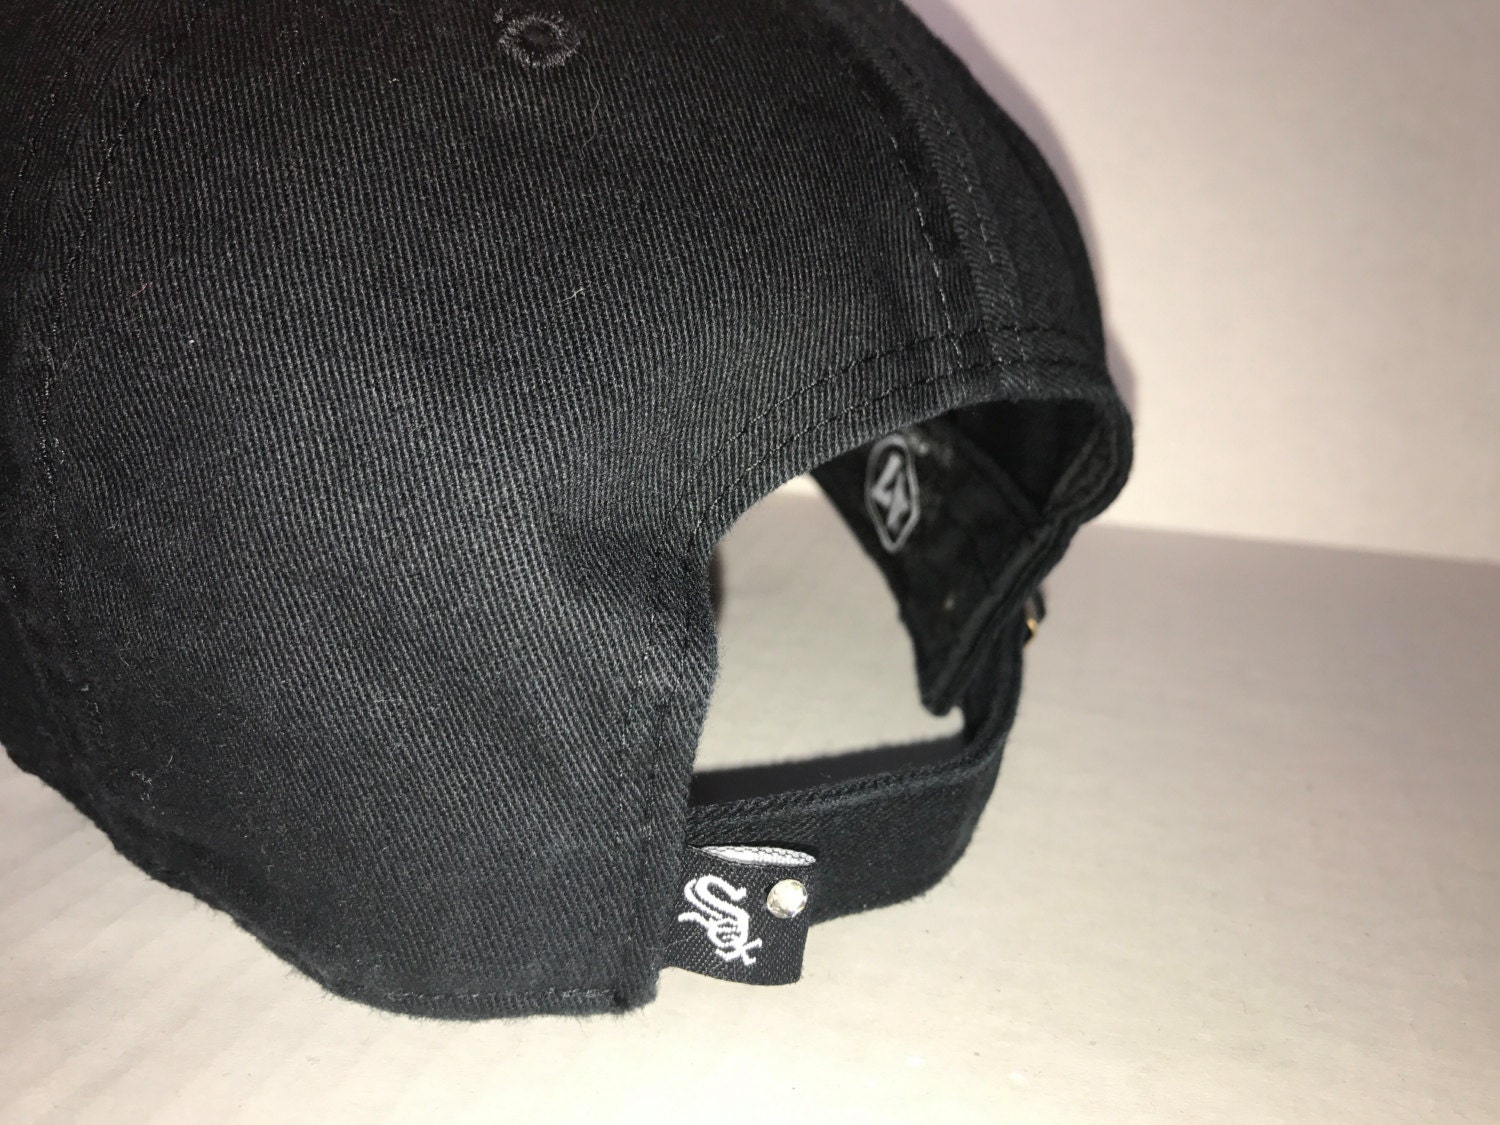 Swarovski Crystal Bling Chicago White Sox Adjustable Hat | Etsy